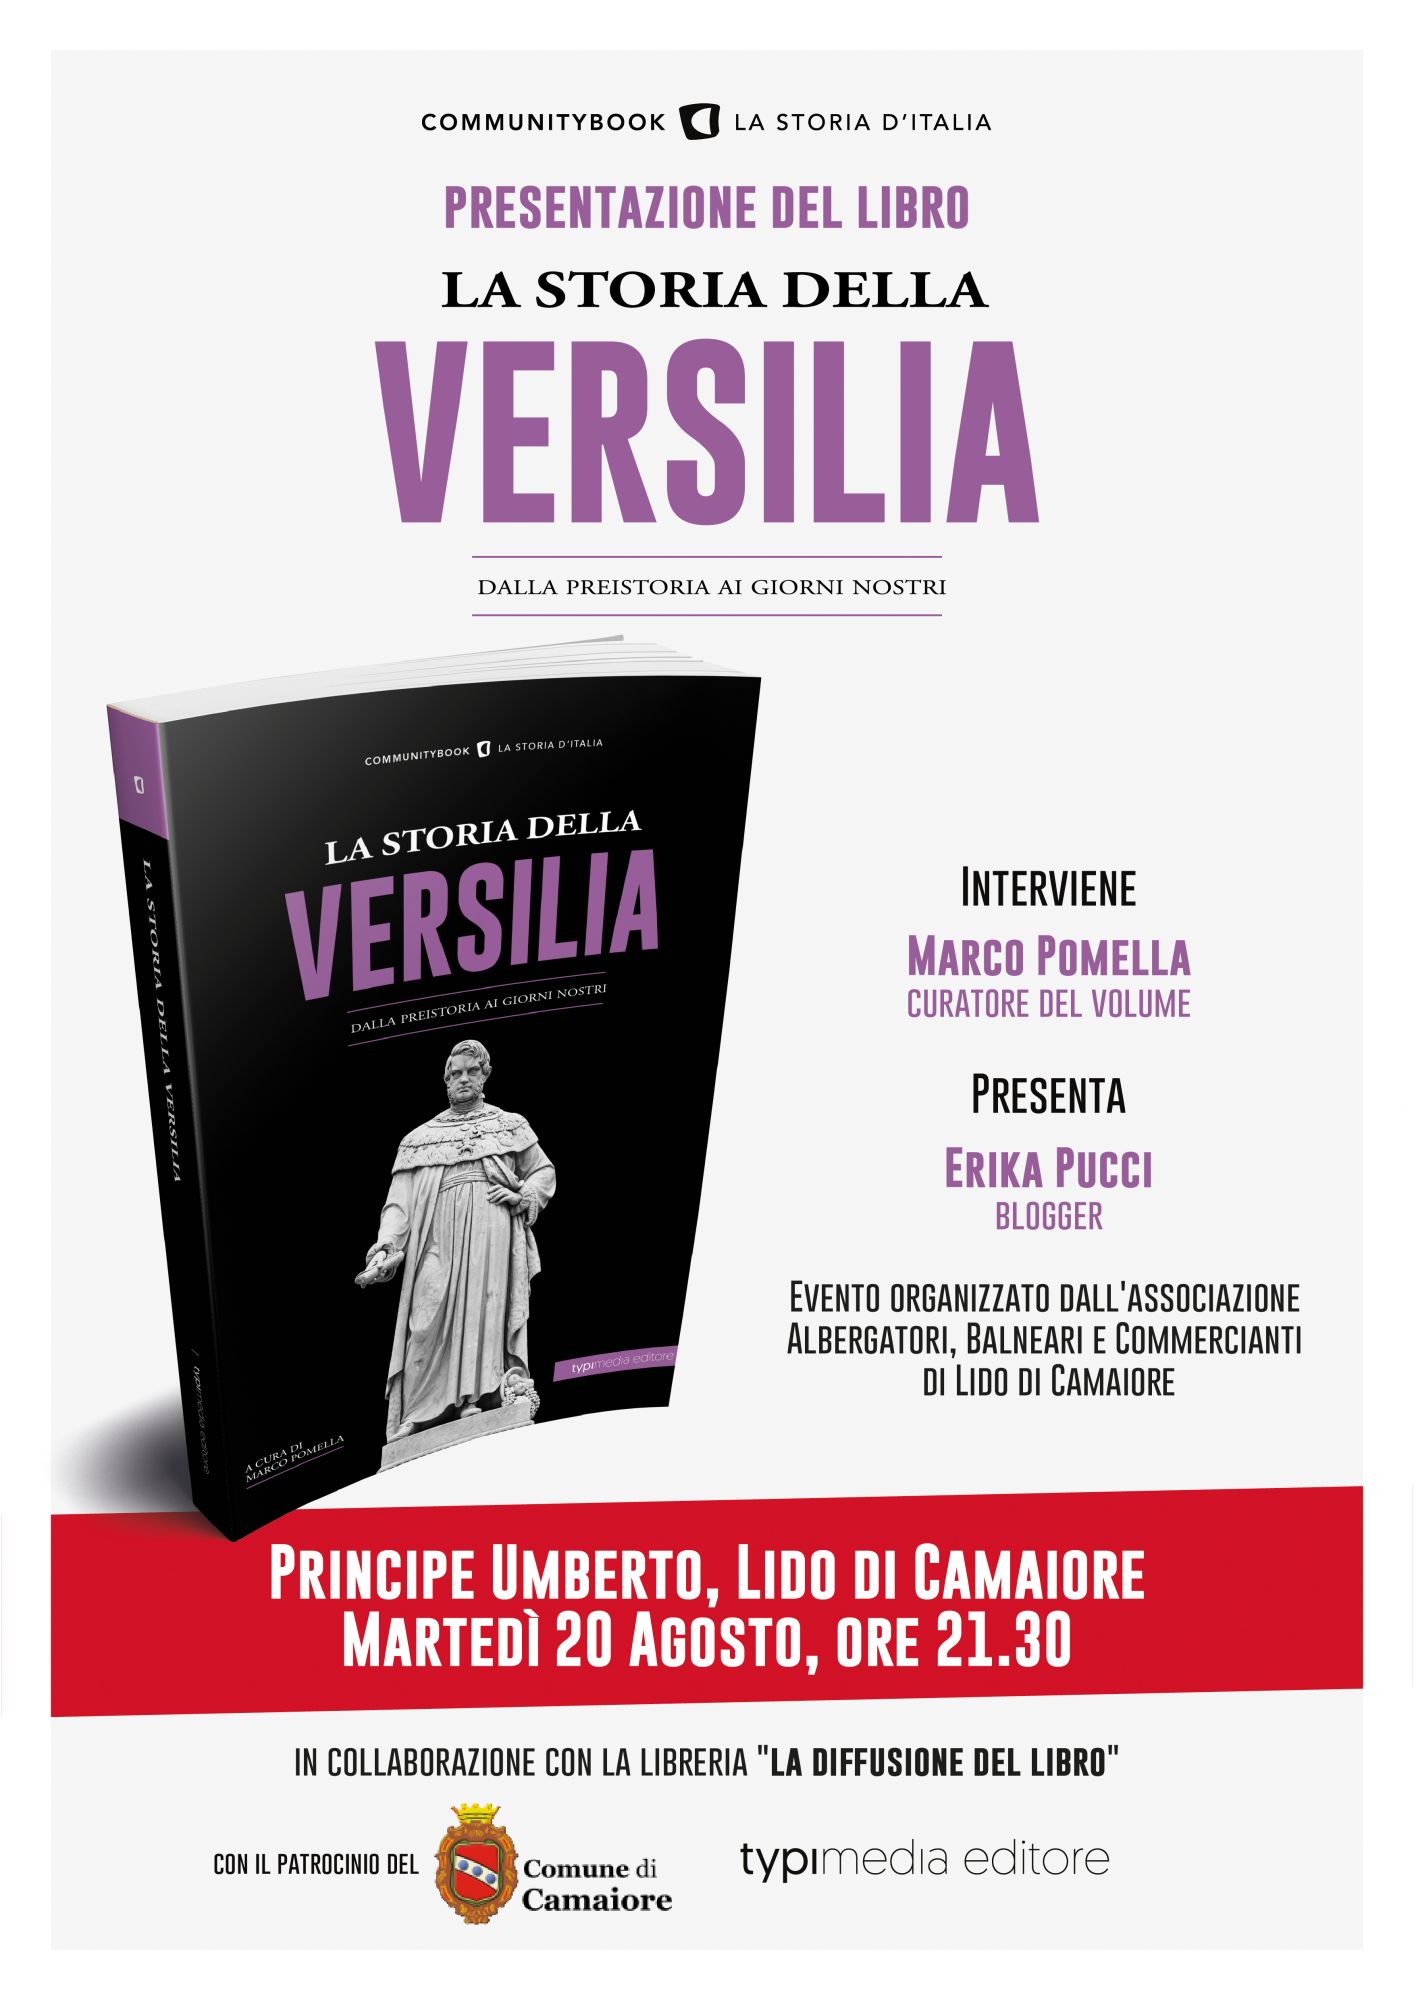 La Storia della Versilia, la presentazione a Lido di Camaiore